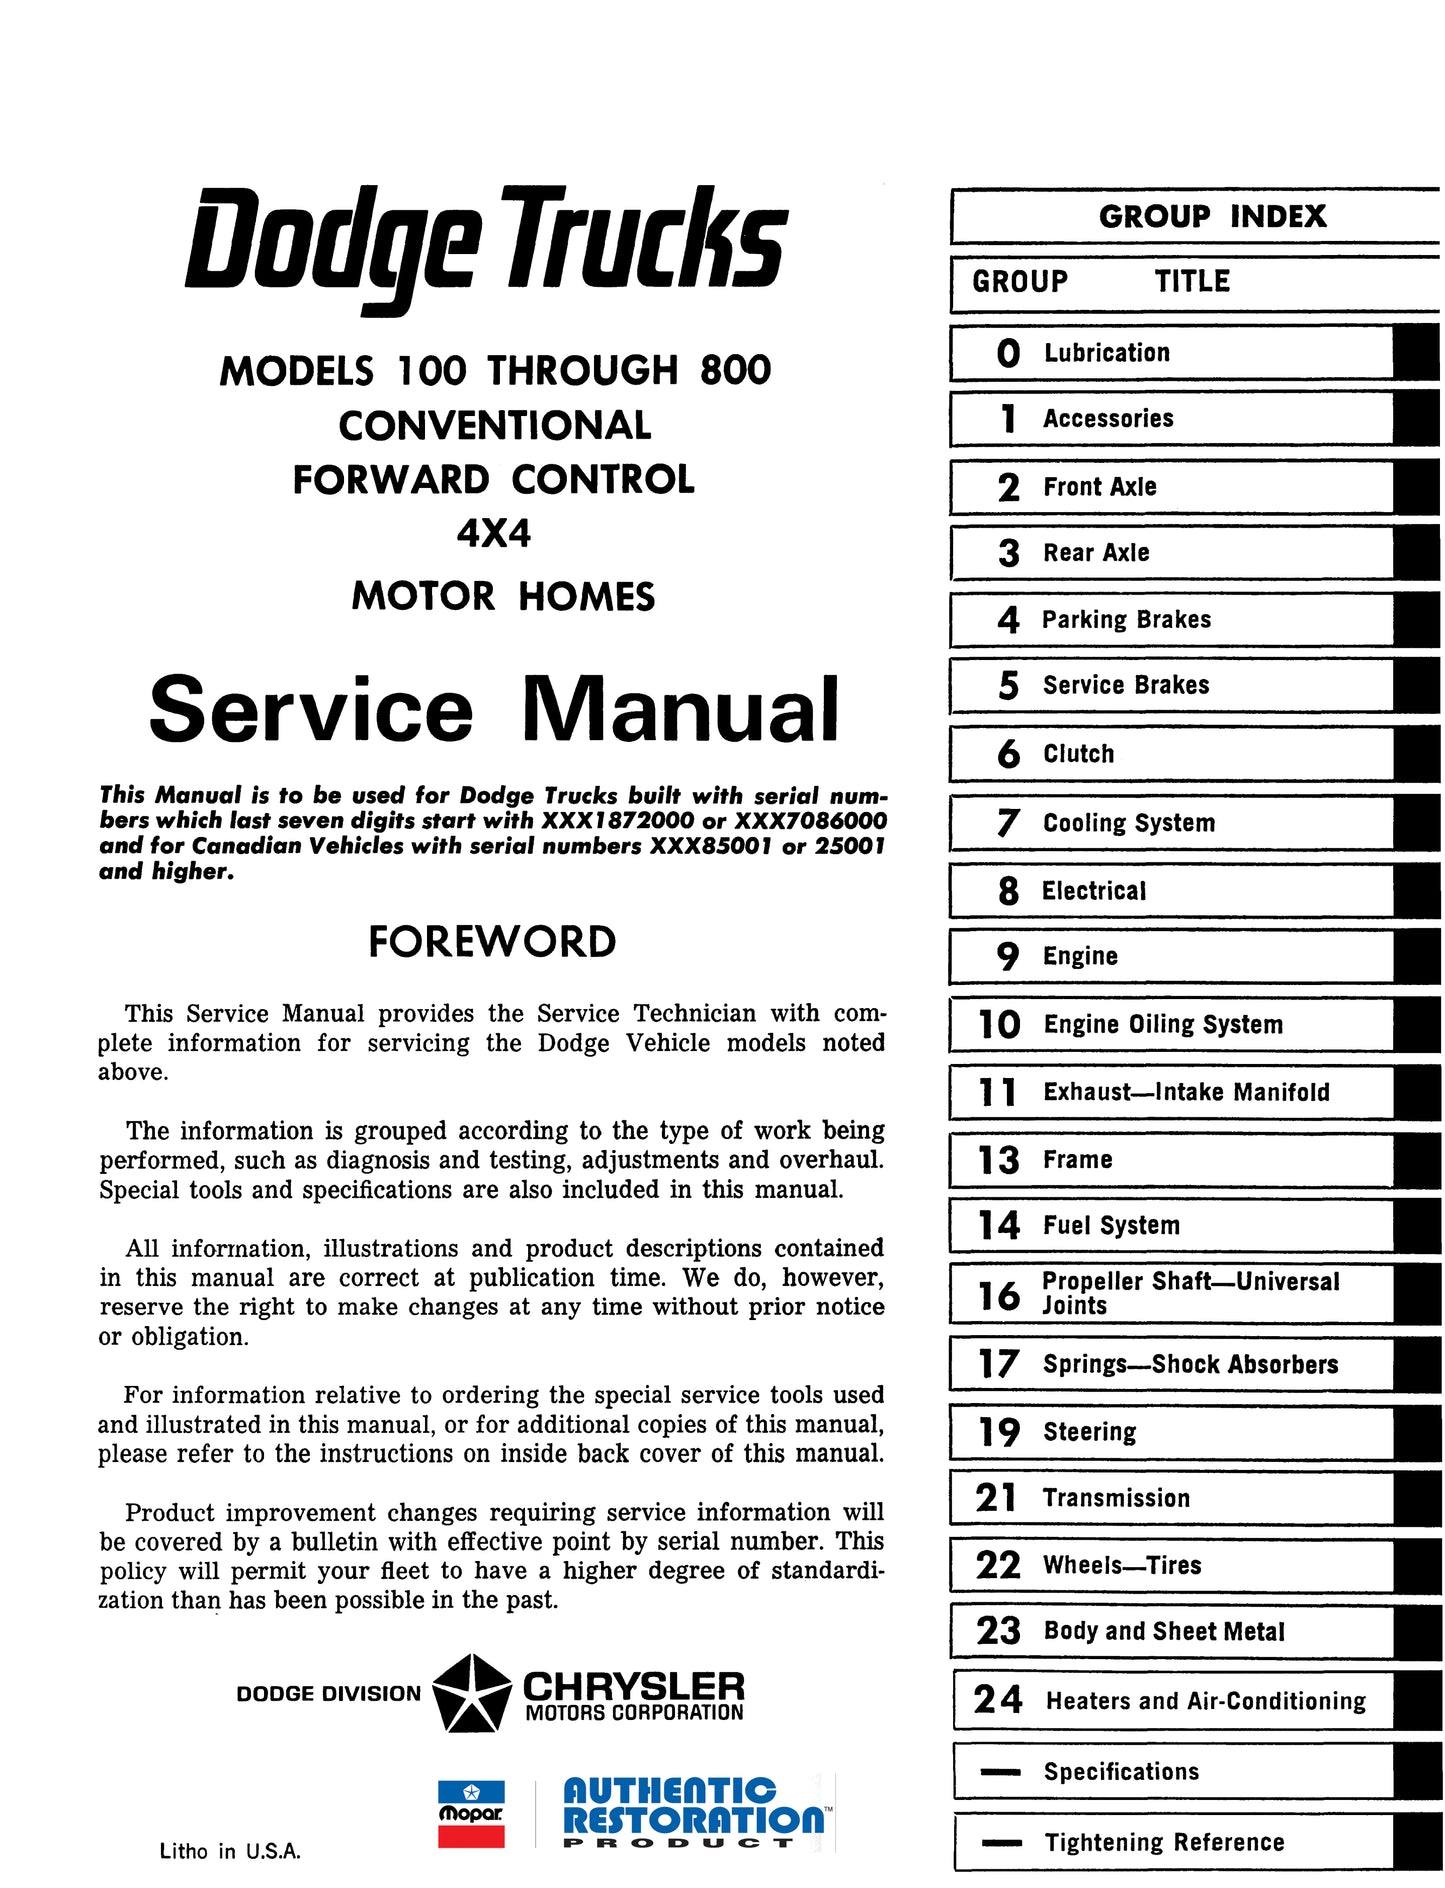 1969-1971 Dodge Truck Shop Manual - All Models